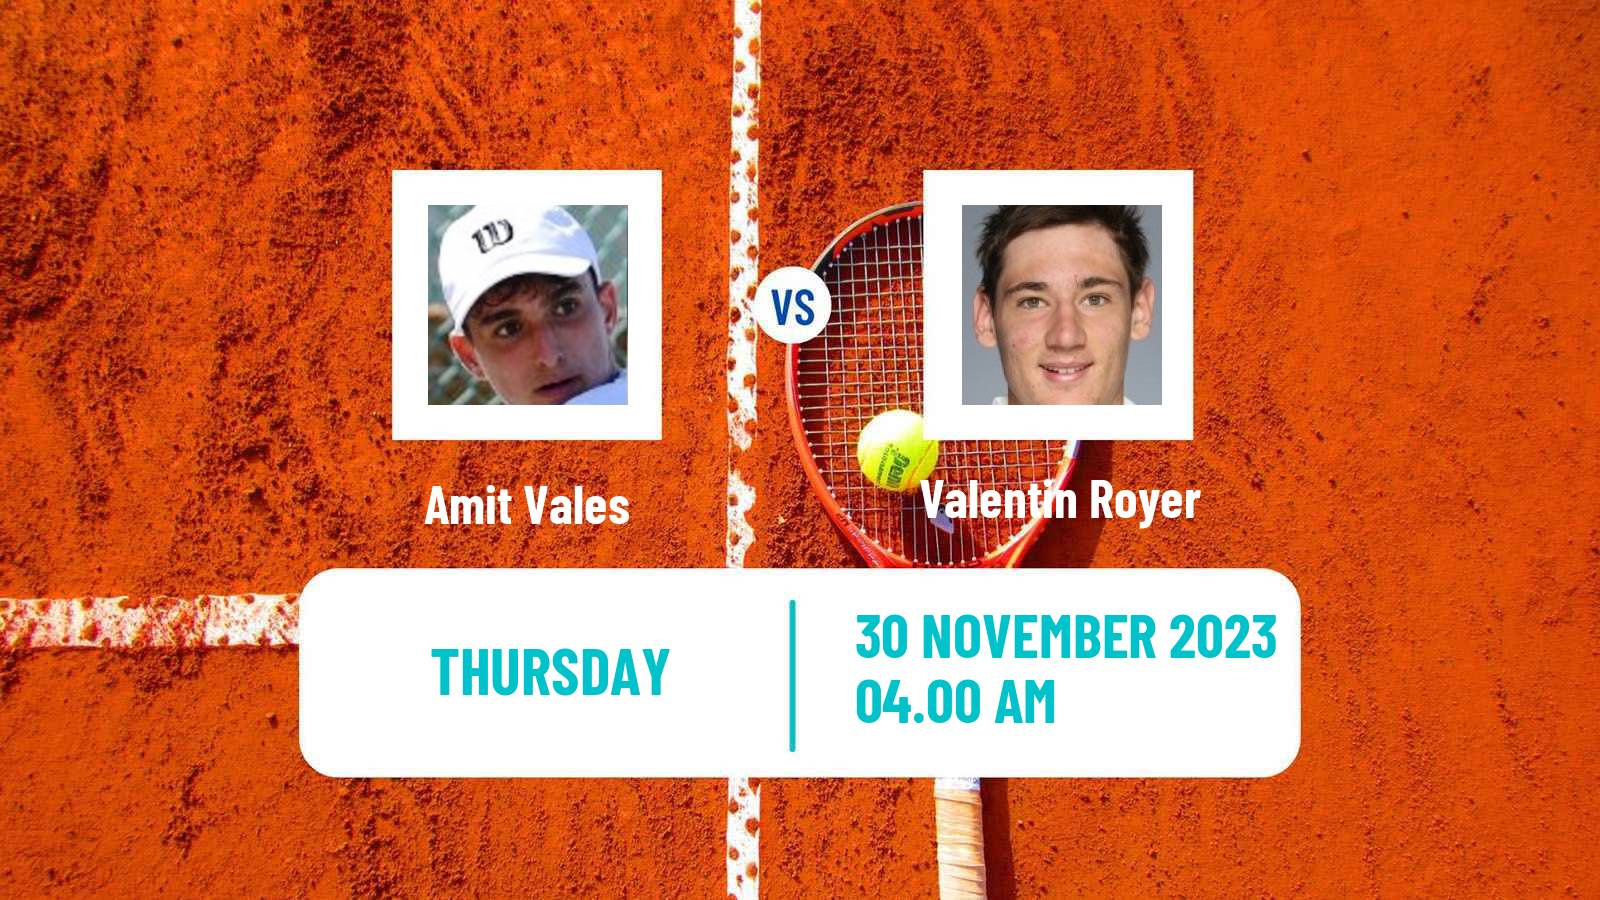 Tennis ITF M25 Heraklion 3 Men Amit Vales - Valentin Royer